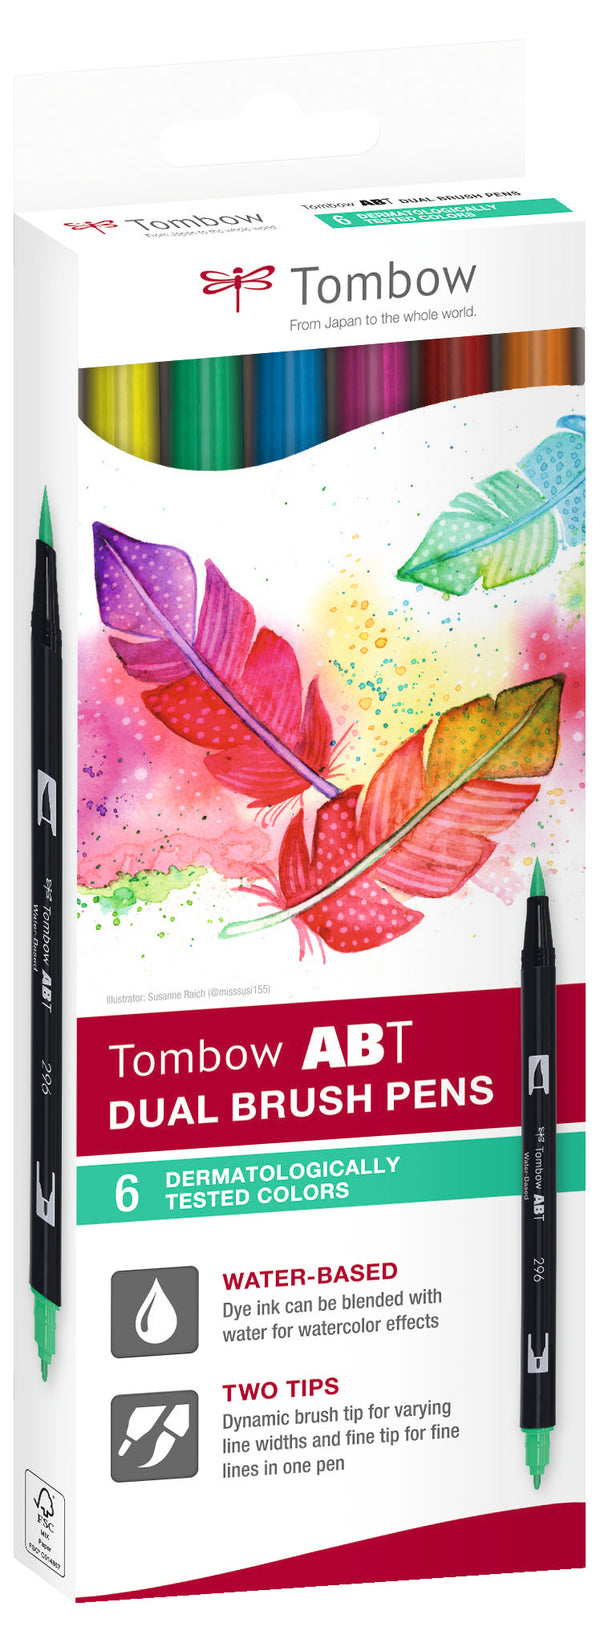 Feutre dual brush pen ABT étui 6 dermatesté